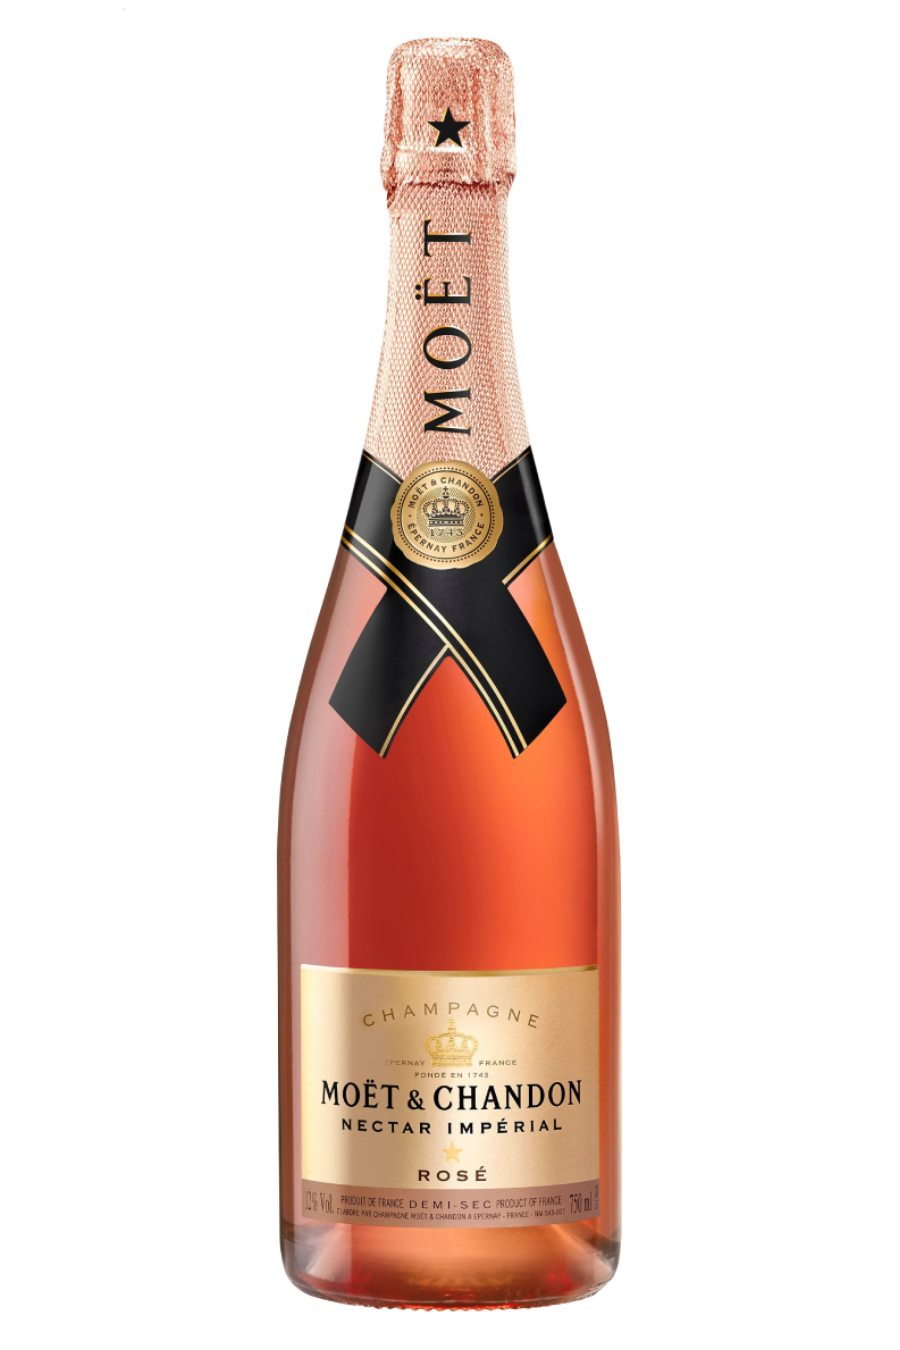 Moet & Chandon - Moet & Chandon Brut Imperial Rose NV 750ML